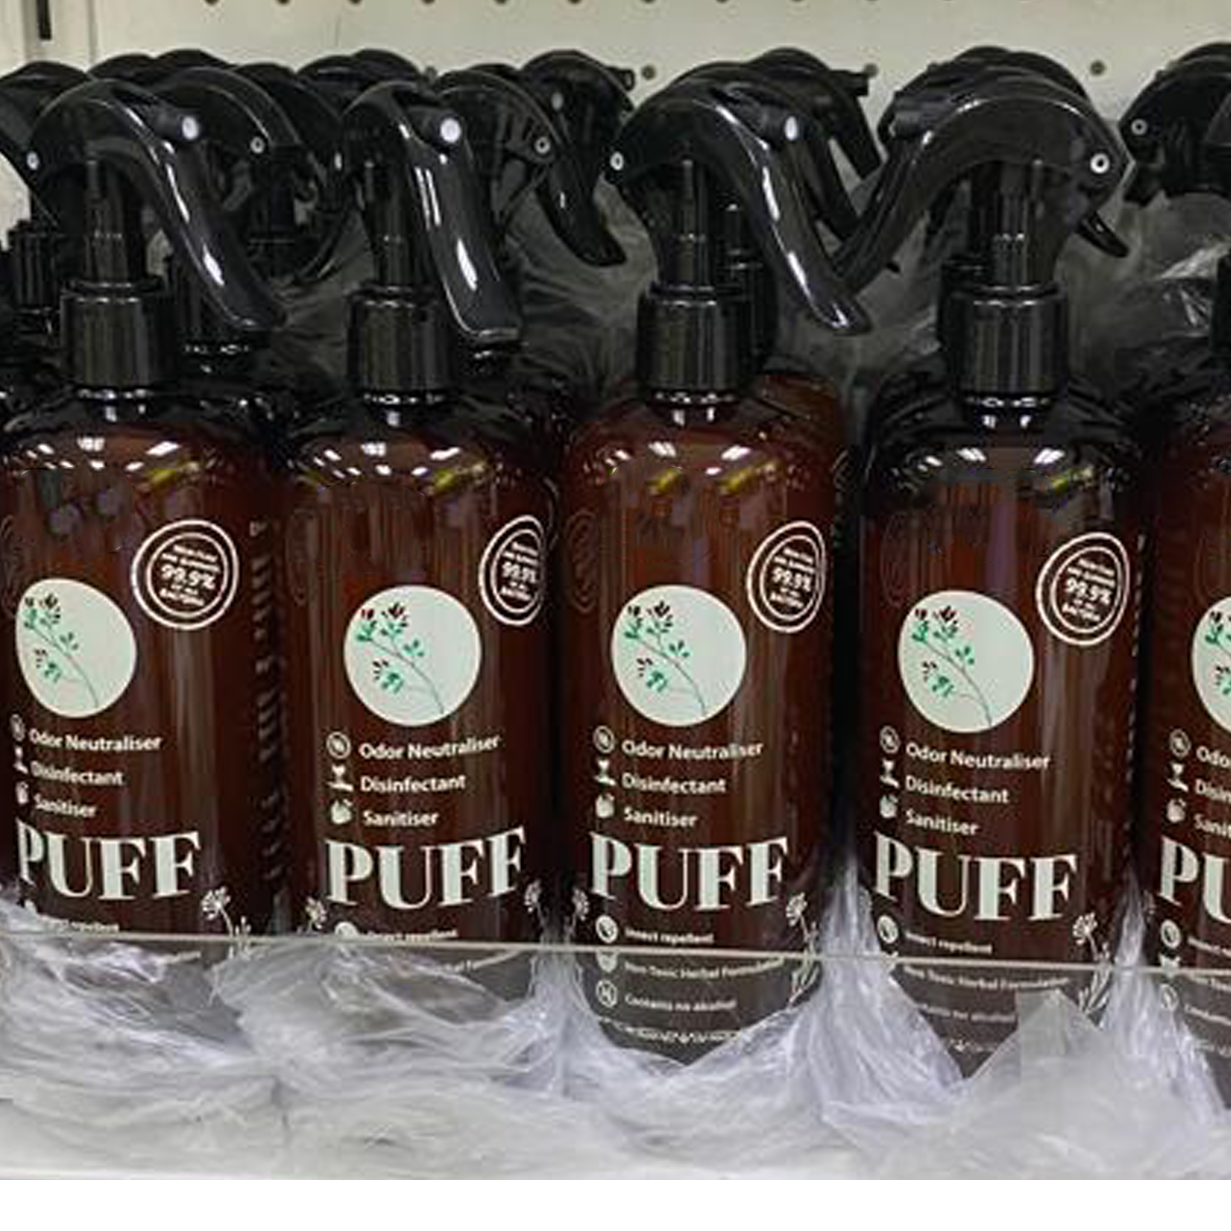 PUFF MultiFunction Herbal Spray Exporters, Wholesaler & Manufacturer | Globaltradeplaza.com